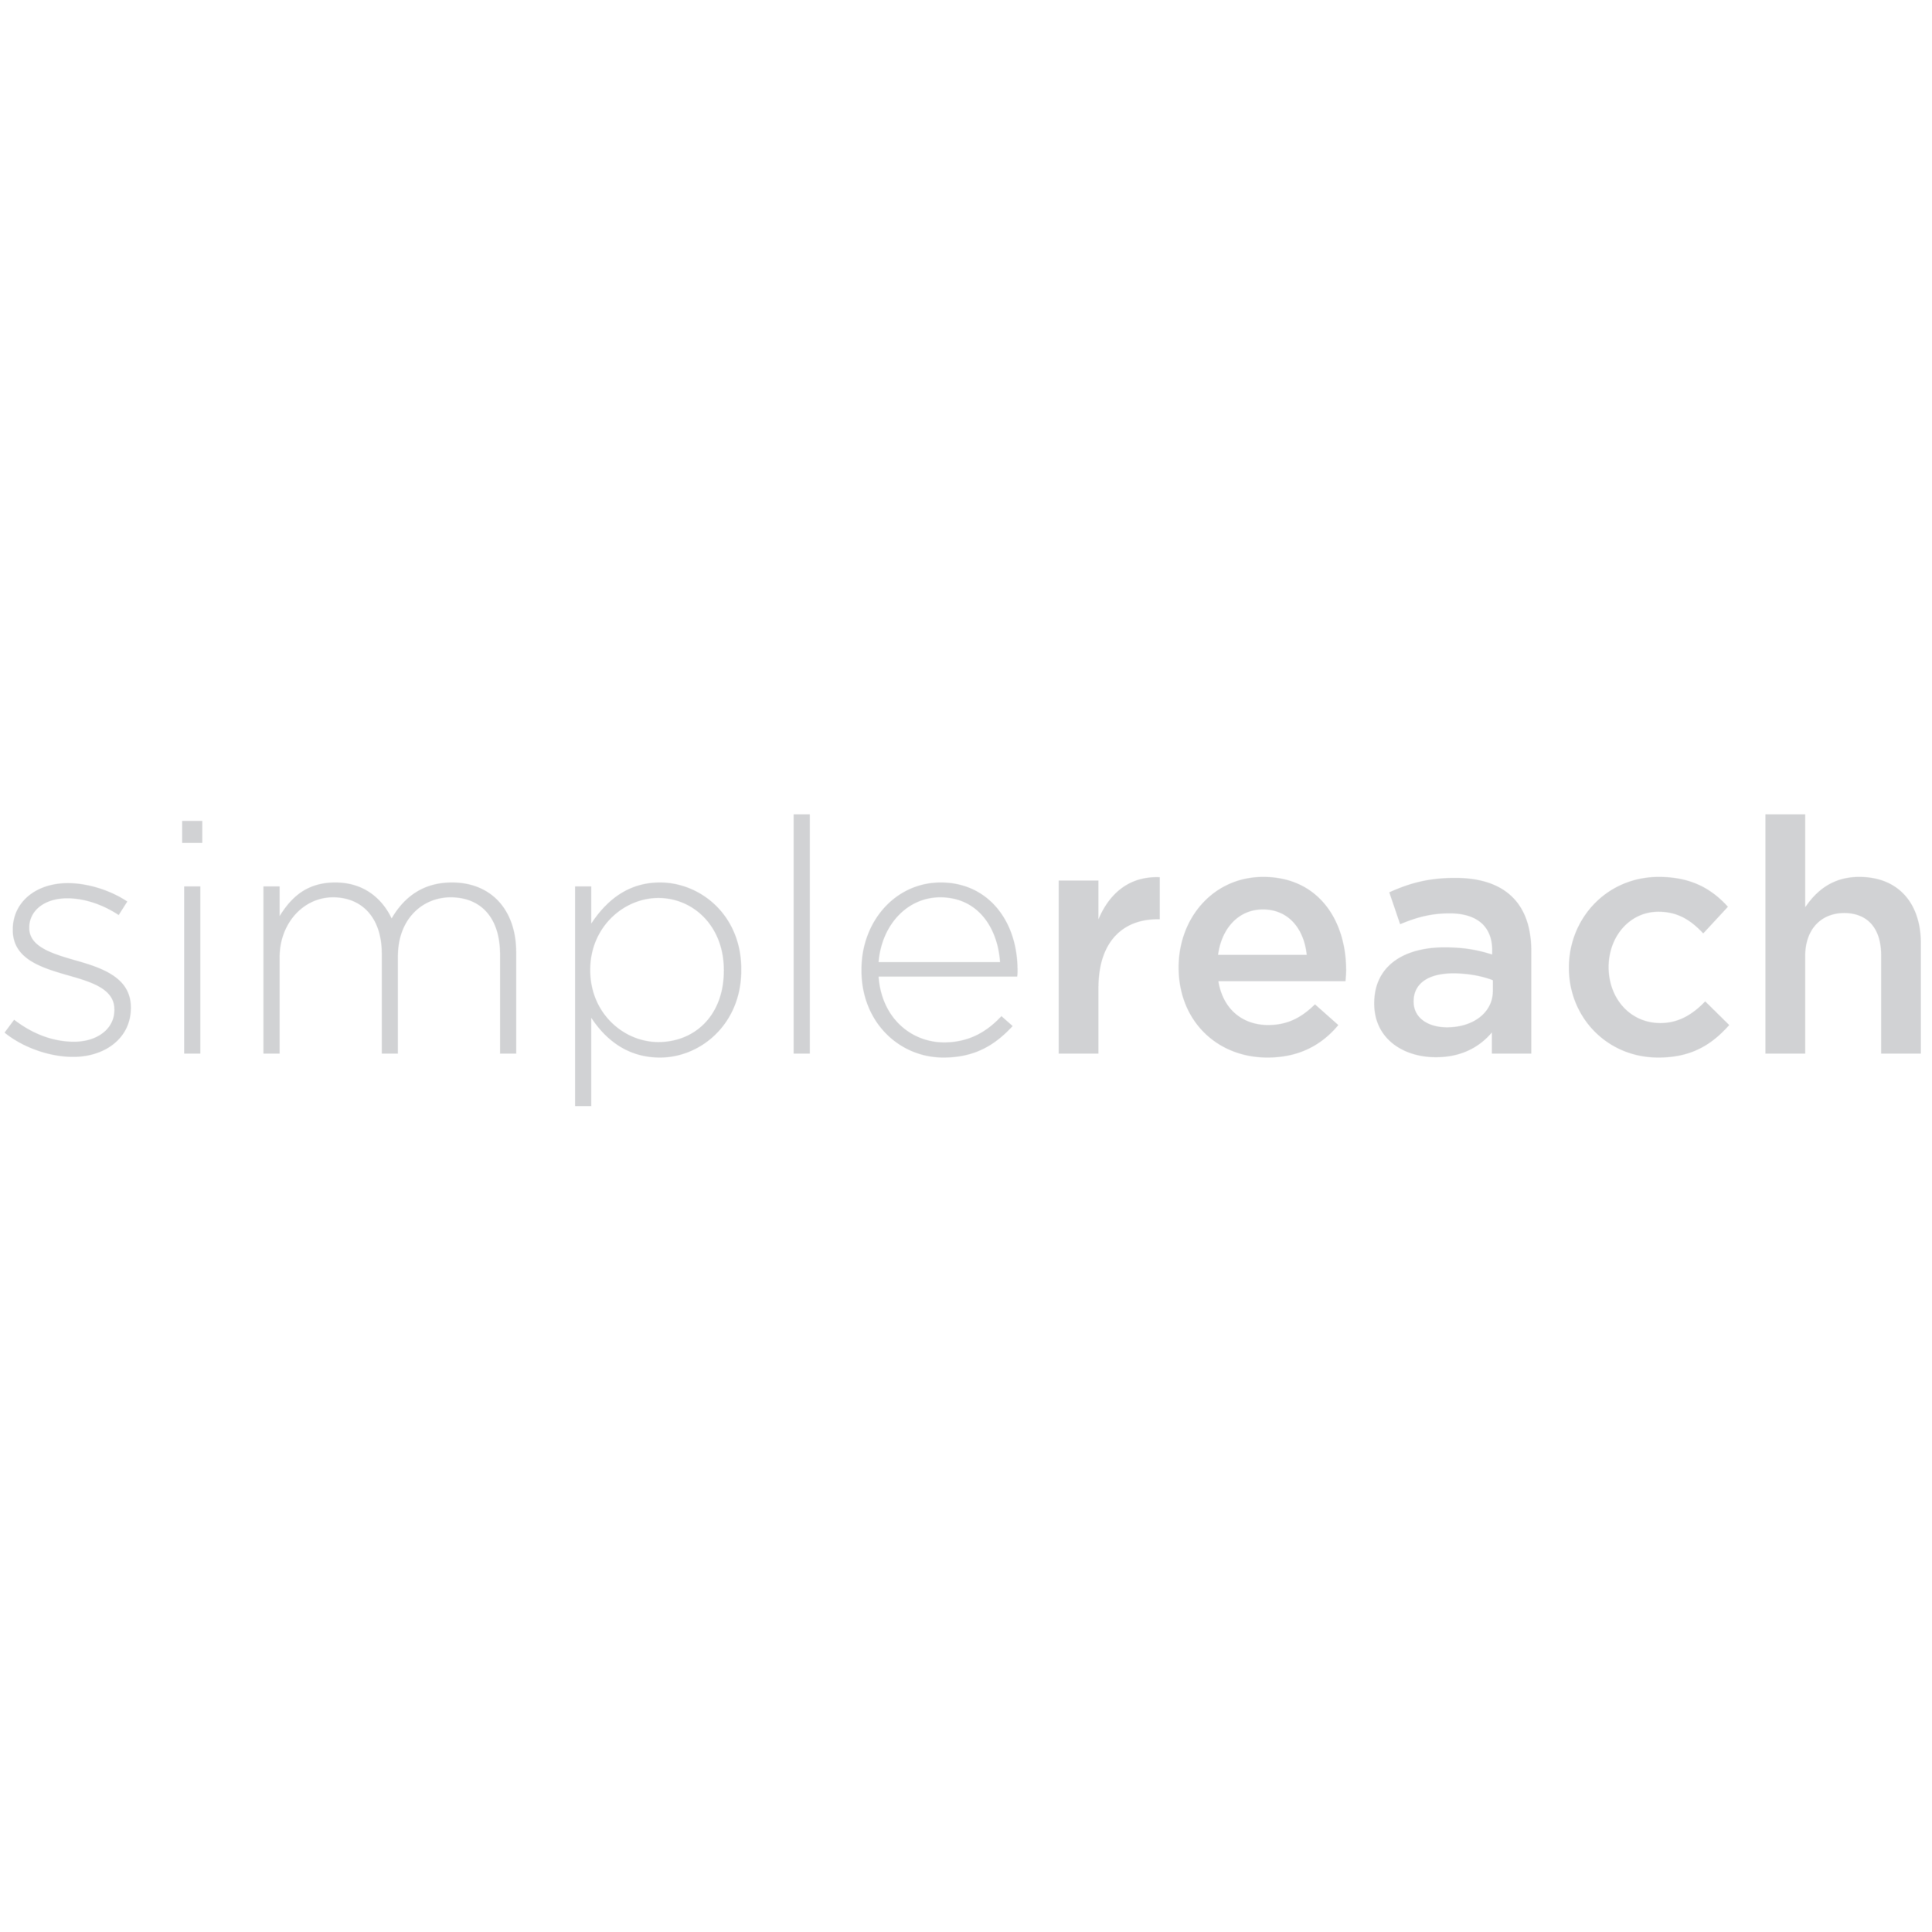 SimpleReach-01.png